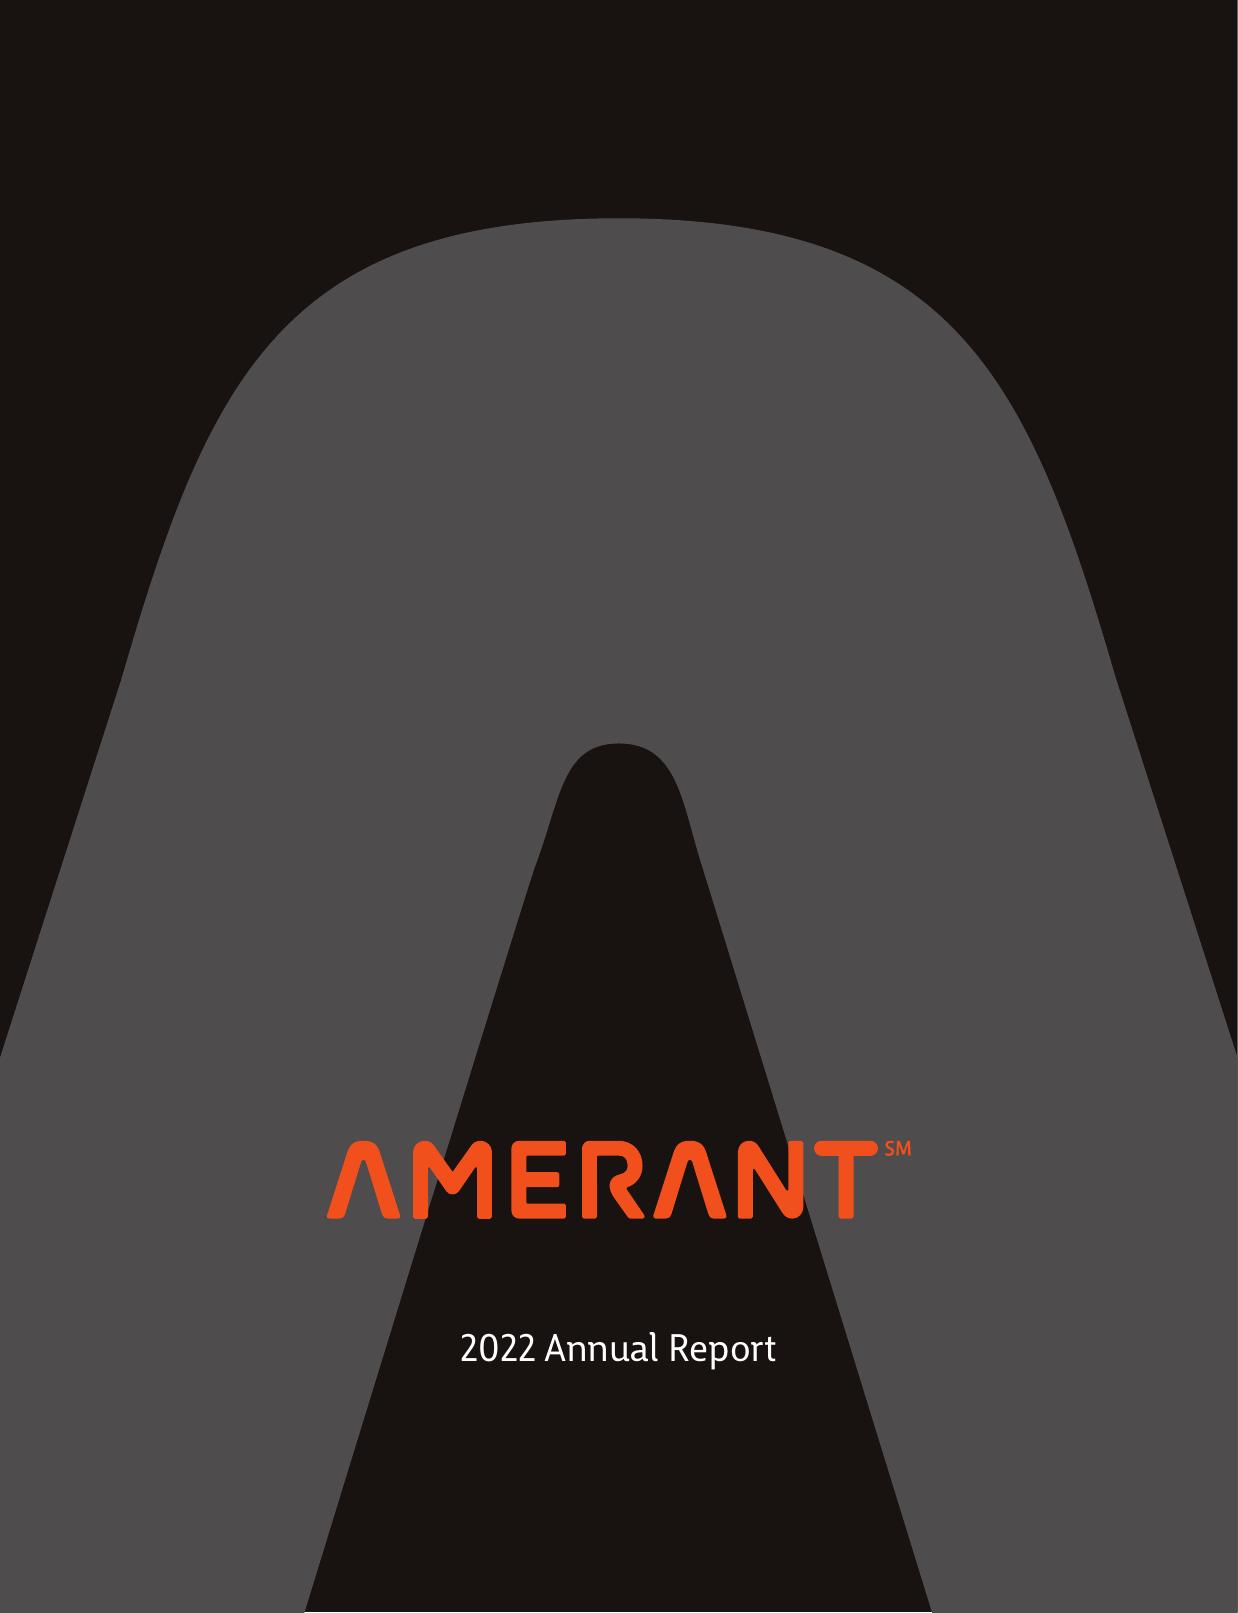 AUSTRADE.GOV 2022 Annual Report